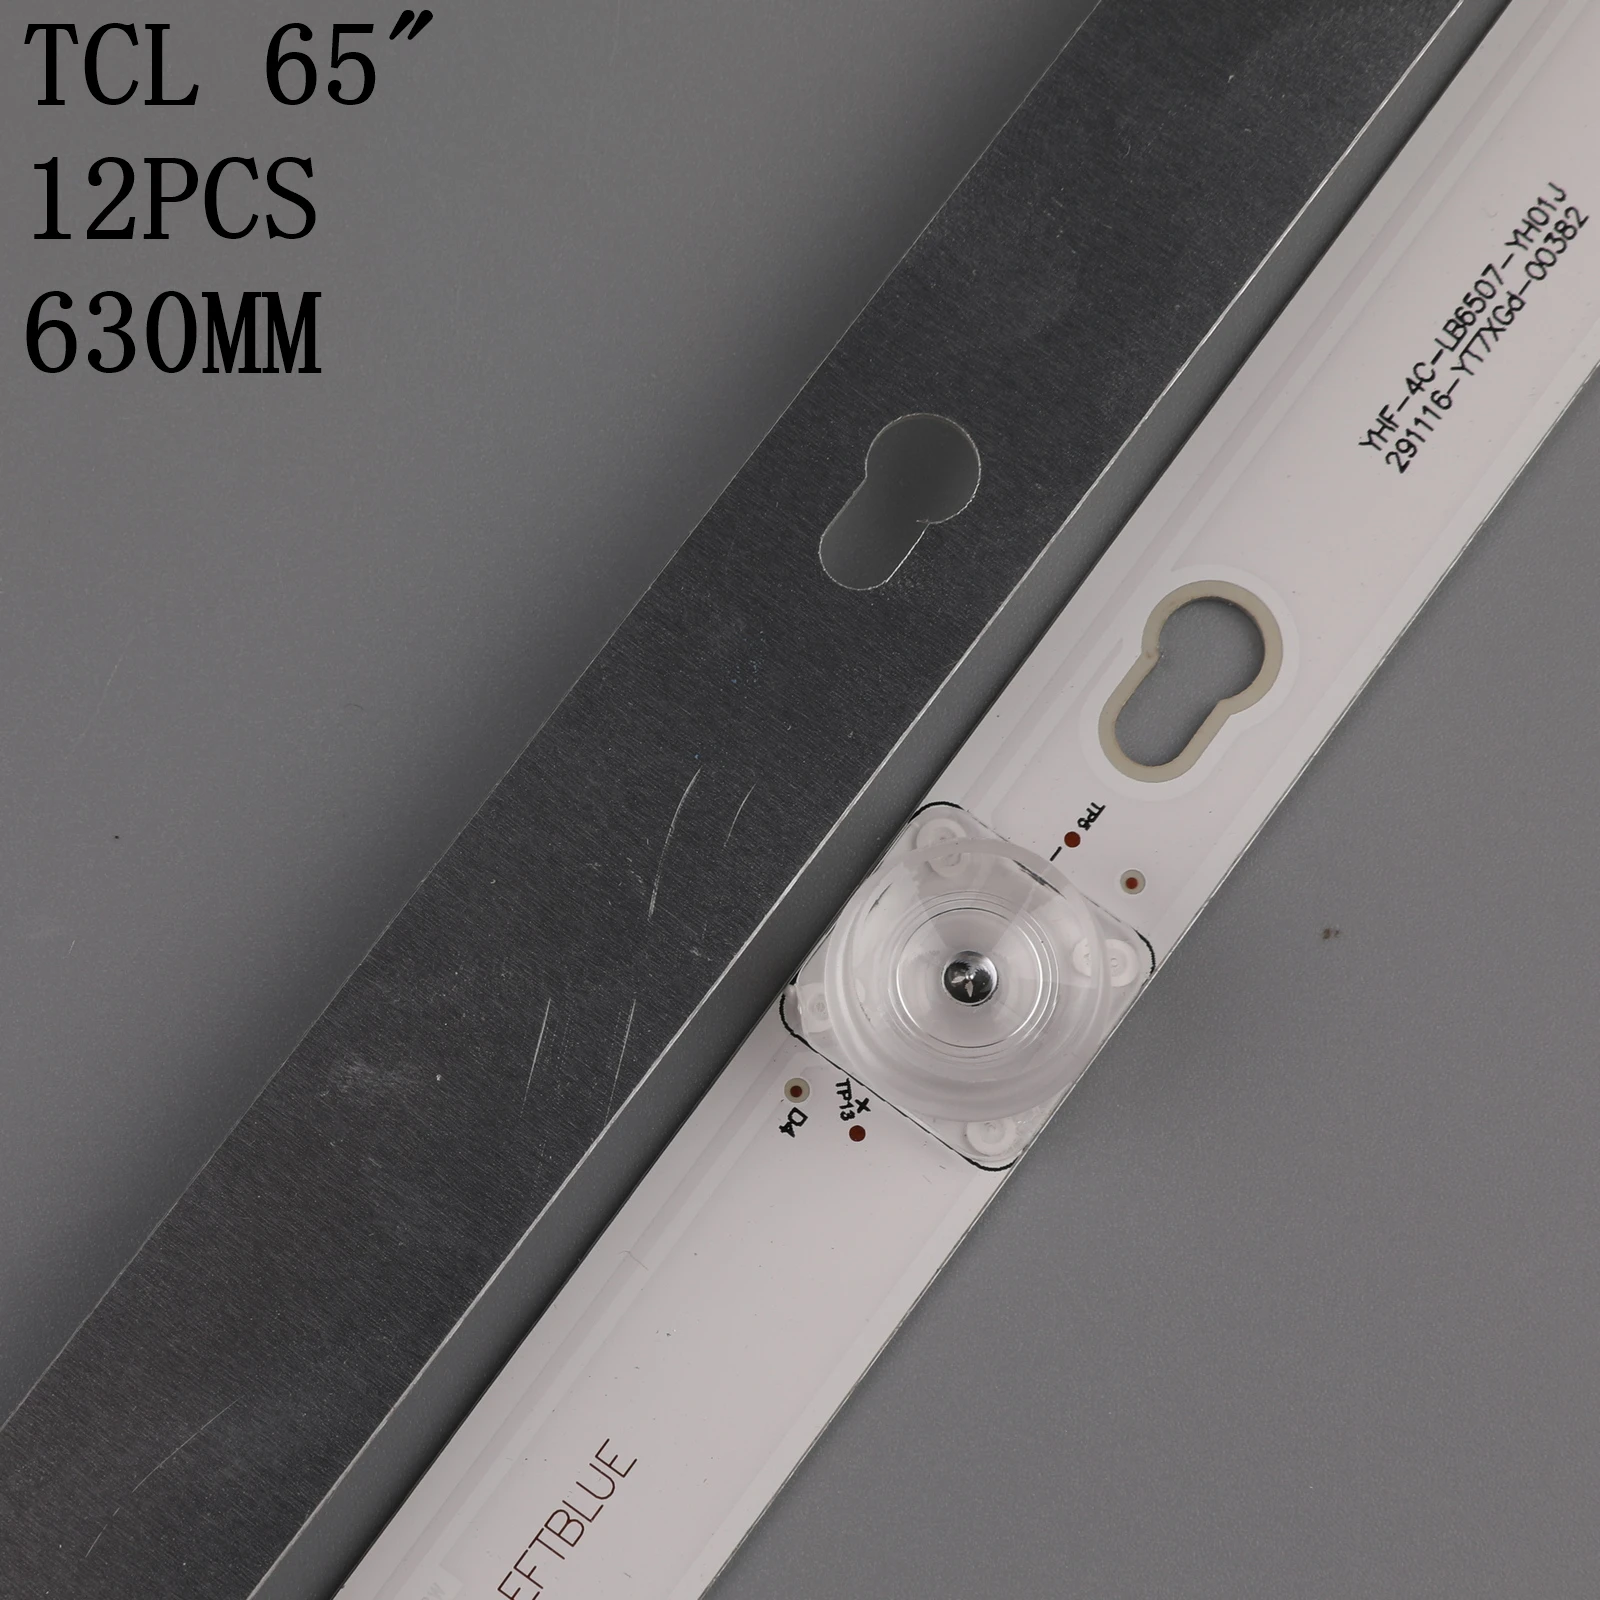 Светодиодная лента для подсветки 7 ламп для TCL 65A730U TCL-TOT-65D2900-12X7-3030 4C-LB6507-YH04J от AliExpress RU&CIS NEW